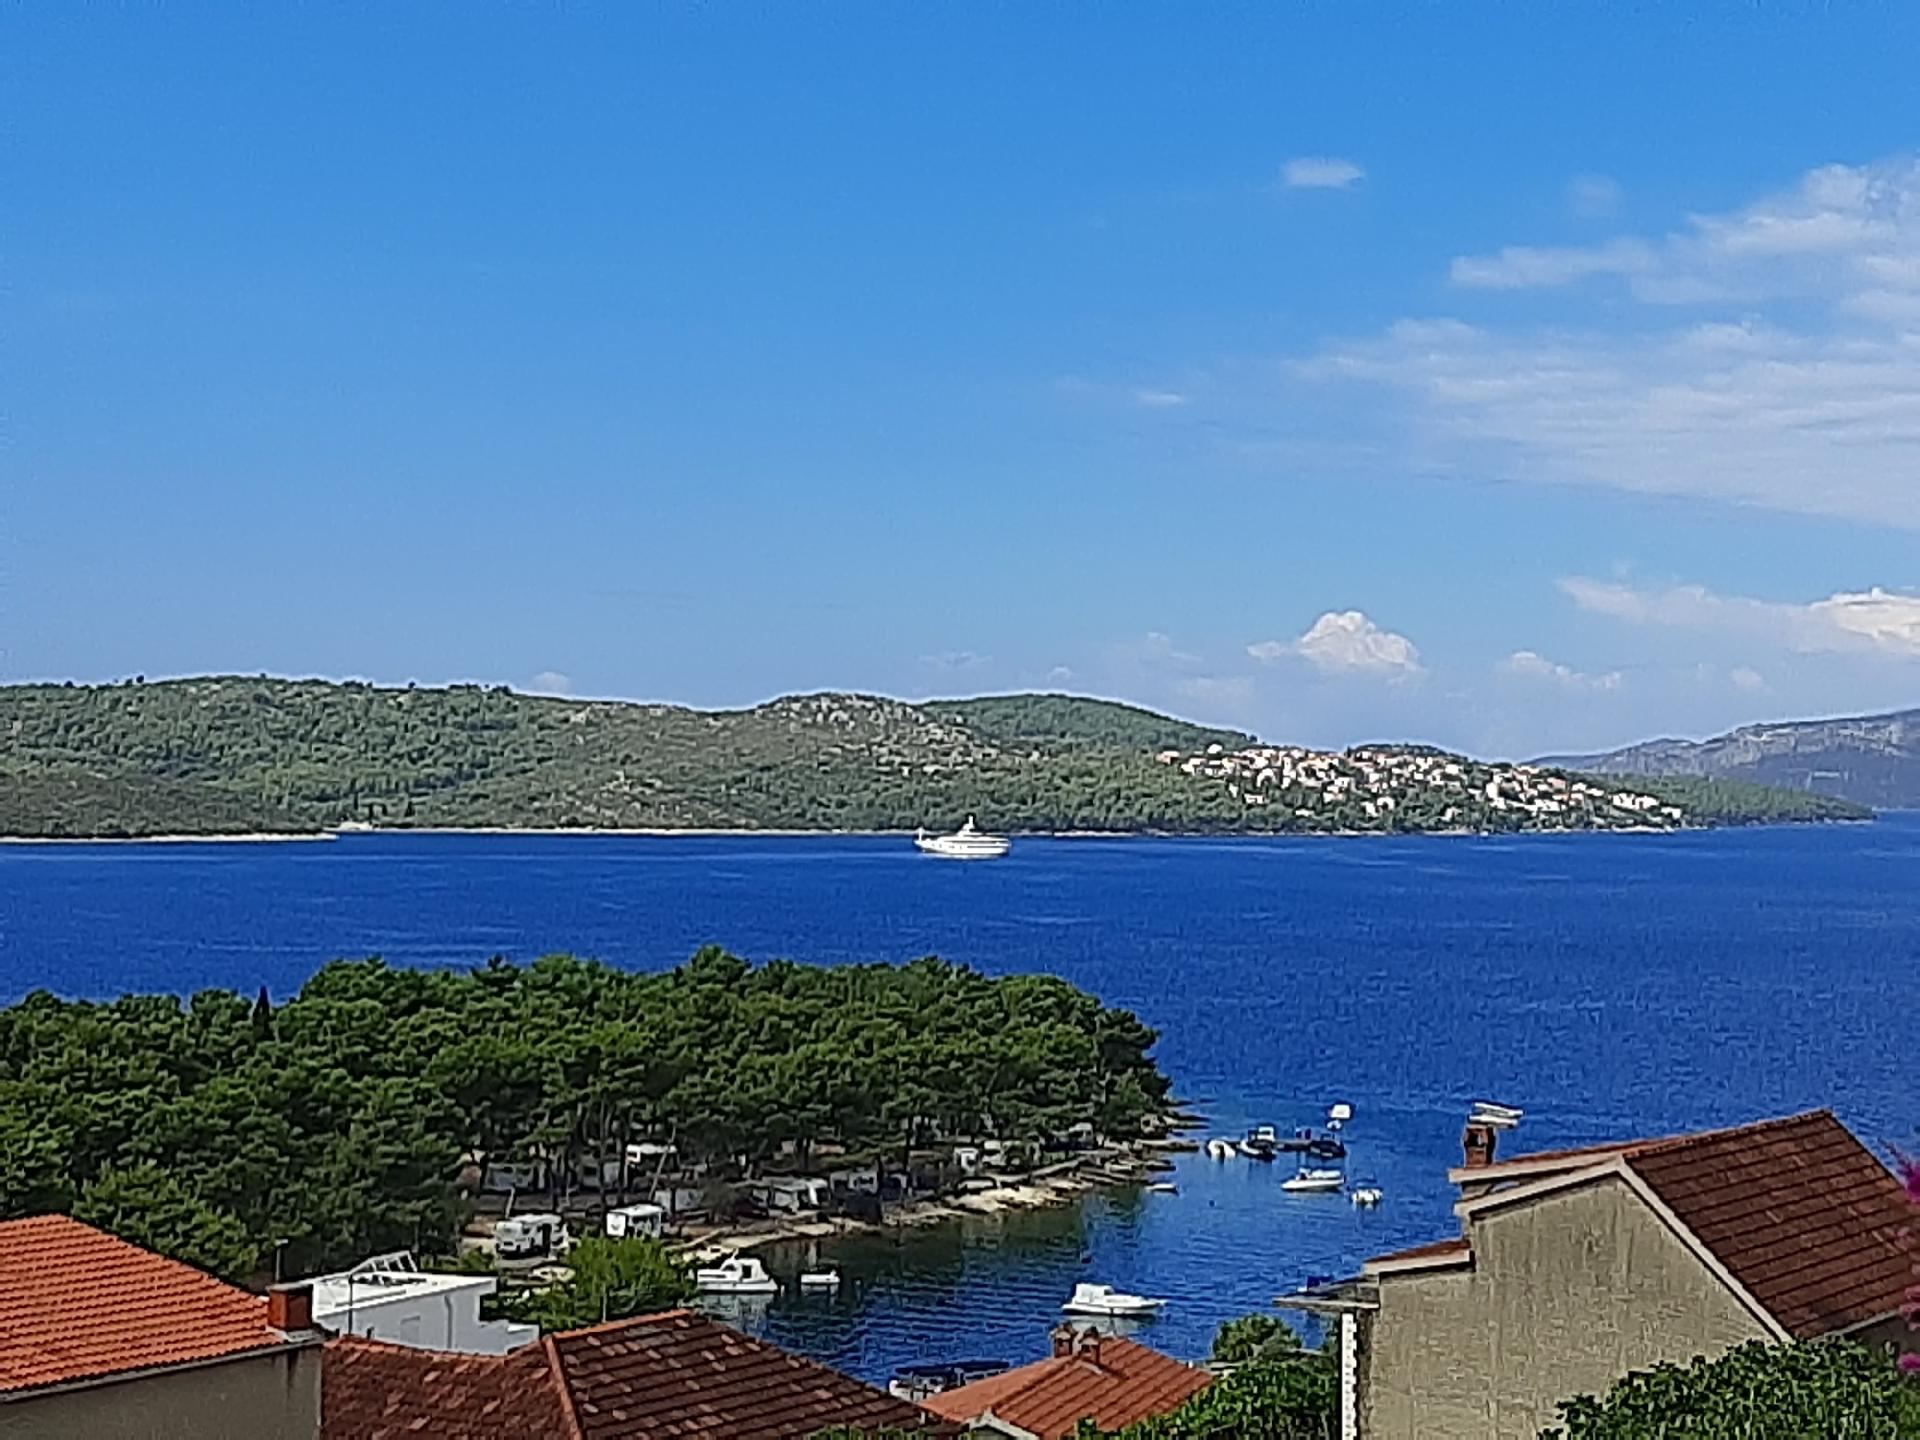 Ferienwohnung mit Meerblick von der Terrasse f&uum Ferienhaus in Kroatien